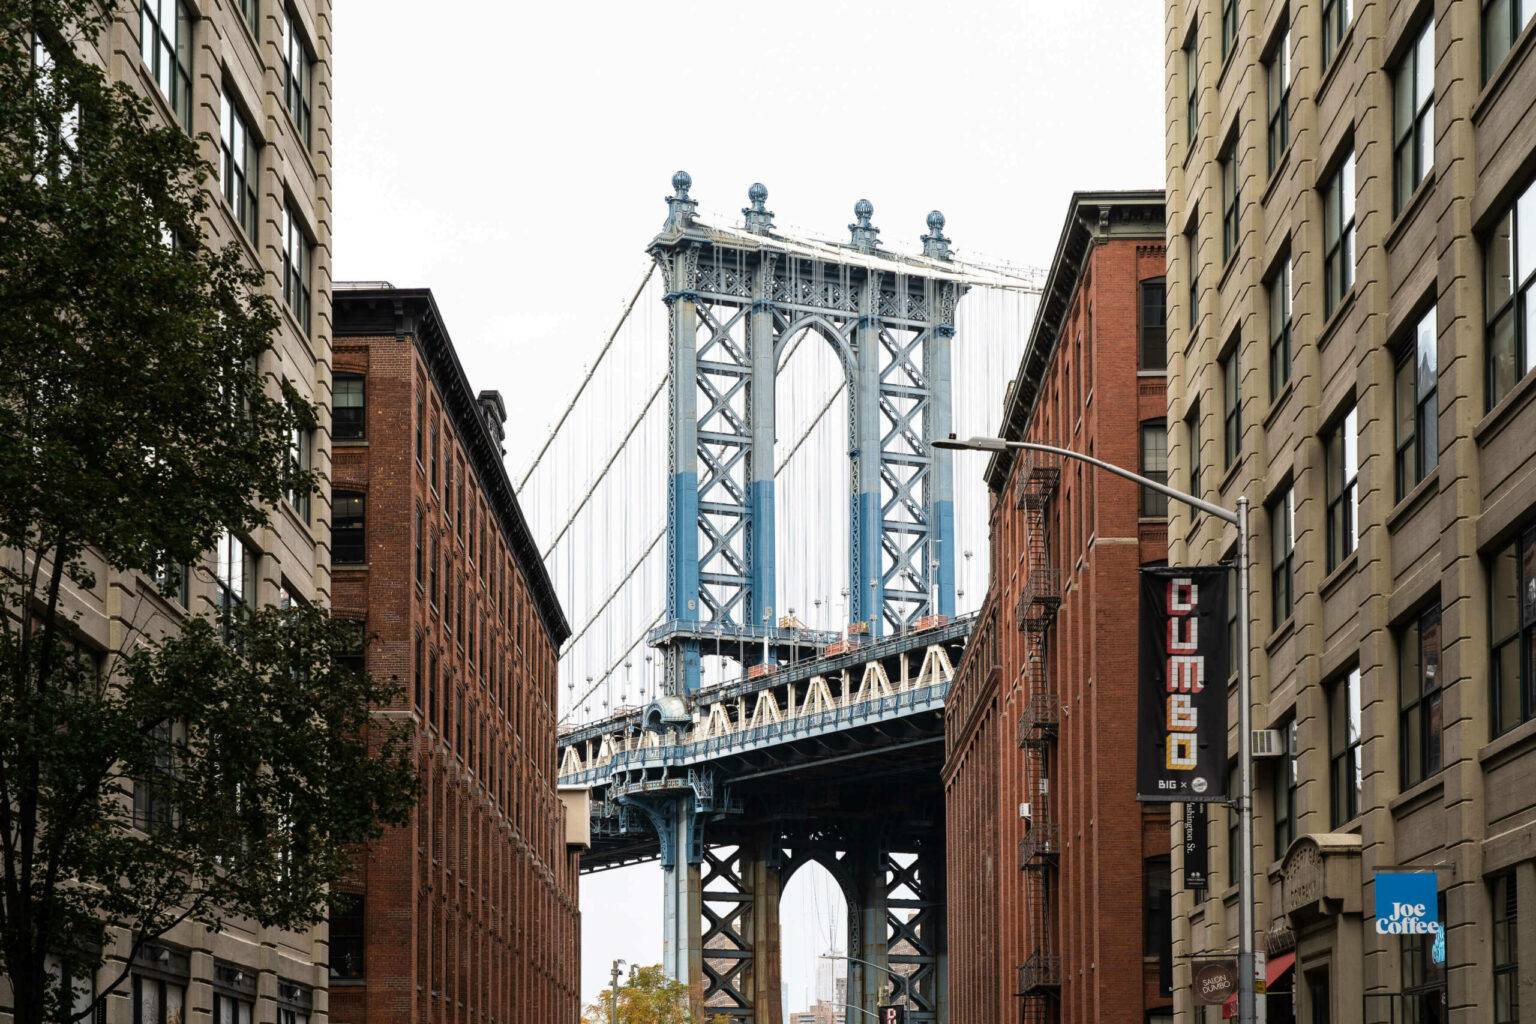 Neben der Brooklyn Bridge und der Williamsburg Bridge ist die Manhattan Bridge die dritte berühmte Brücke in New York.